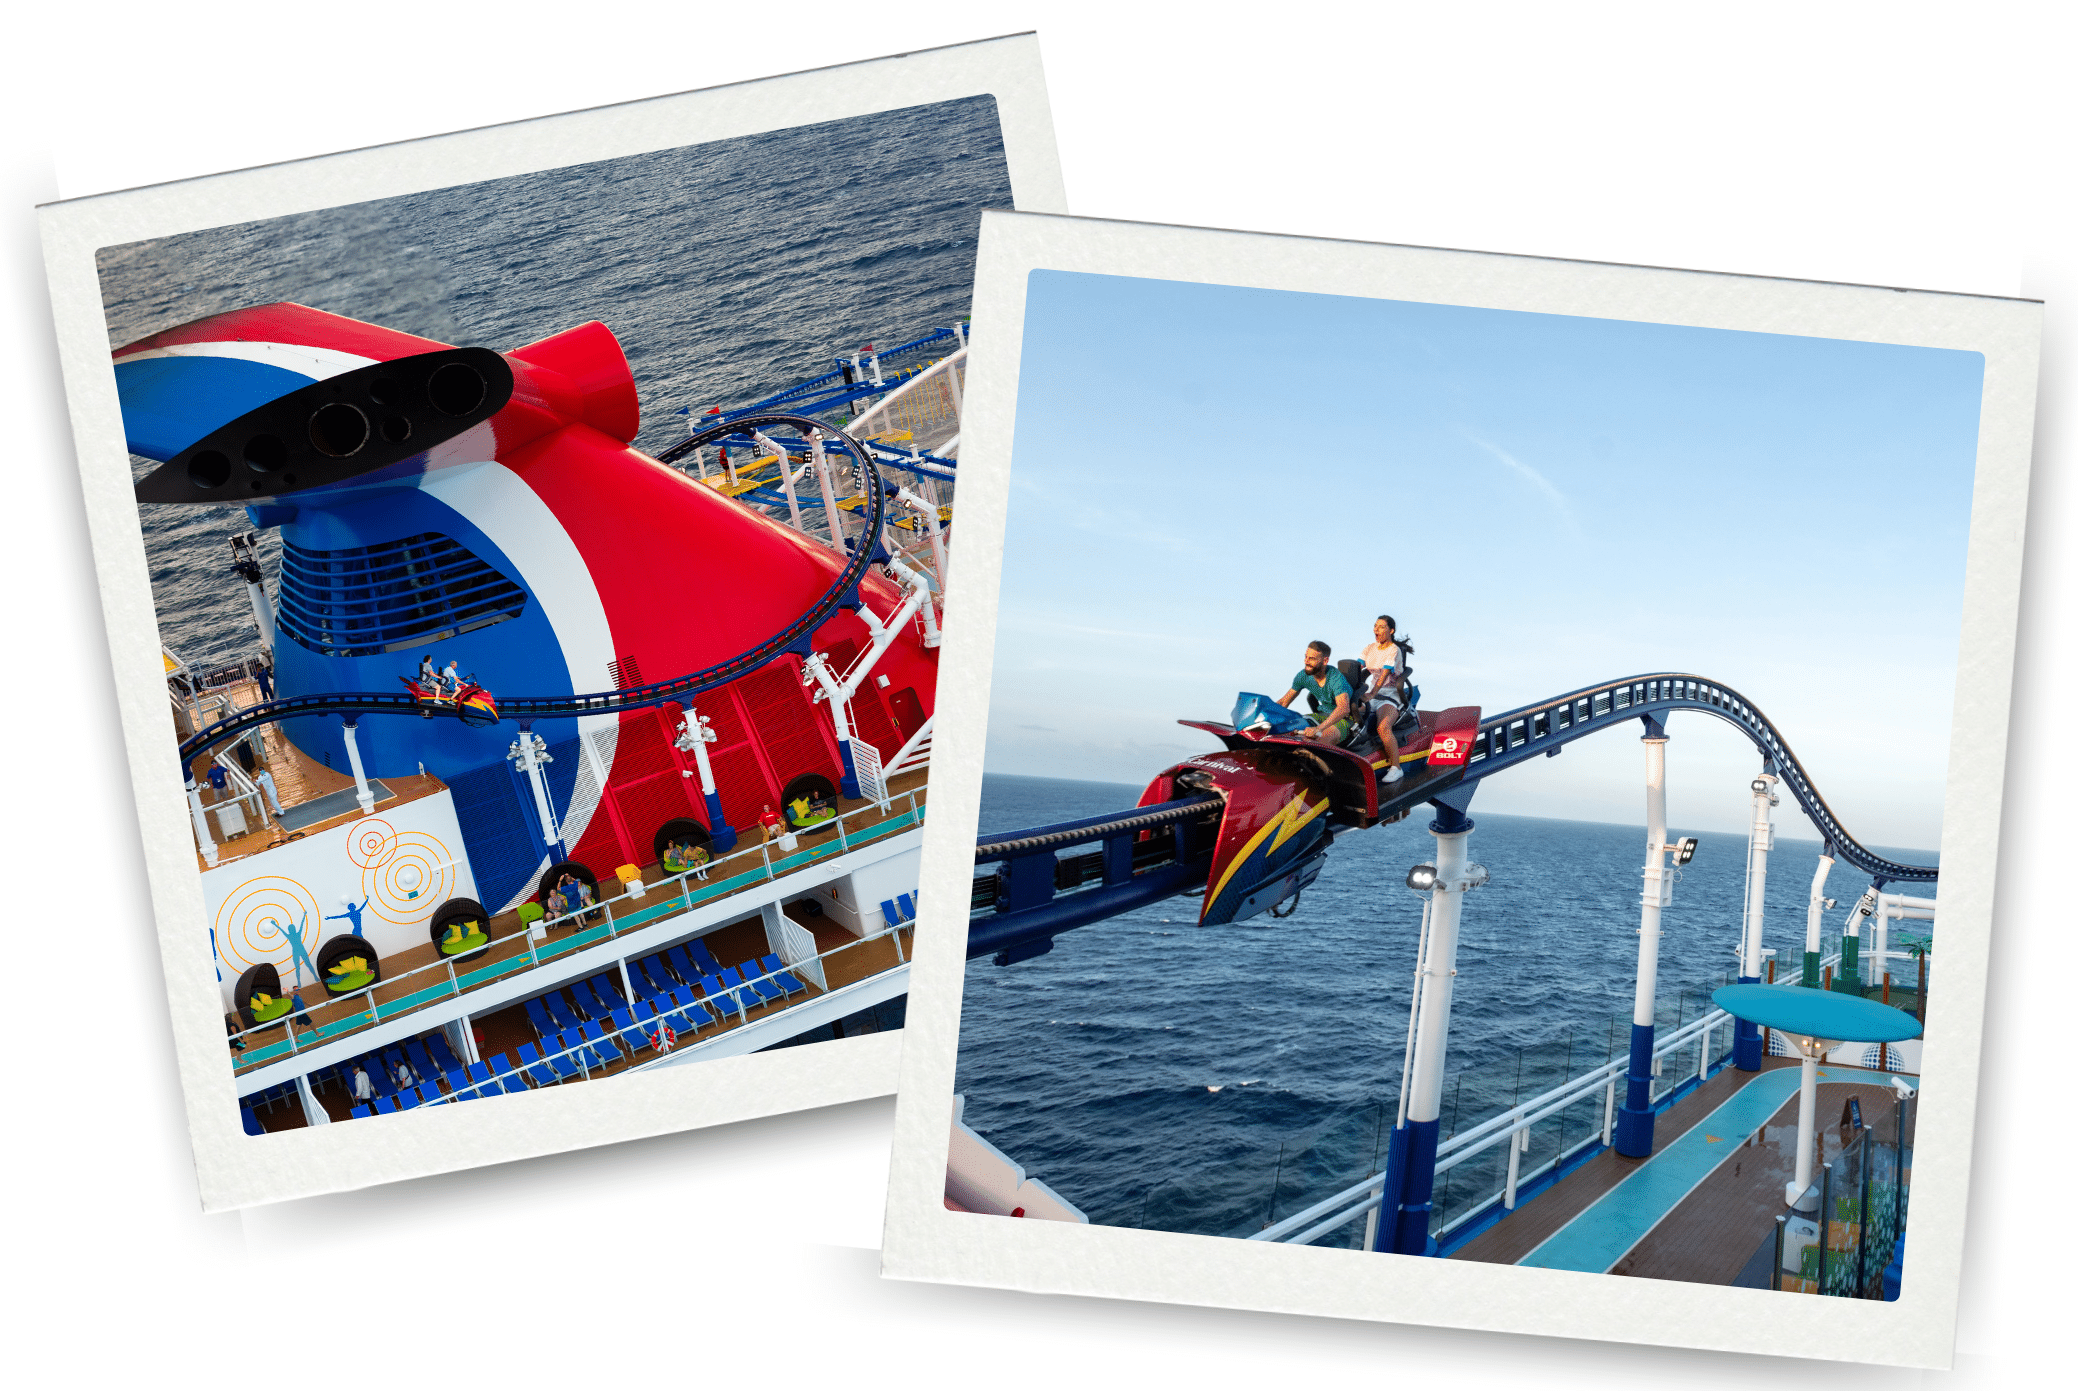 Bolt - achtbaan op zee - Carnival Cruise Line - Mardi Grass - activiteiten aan boord